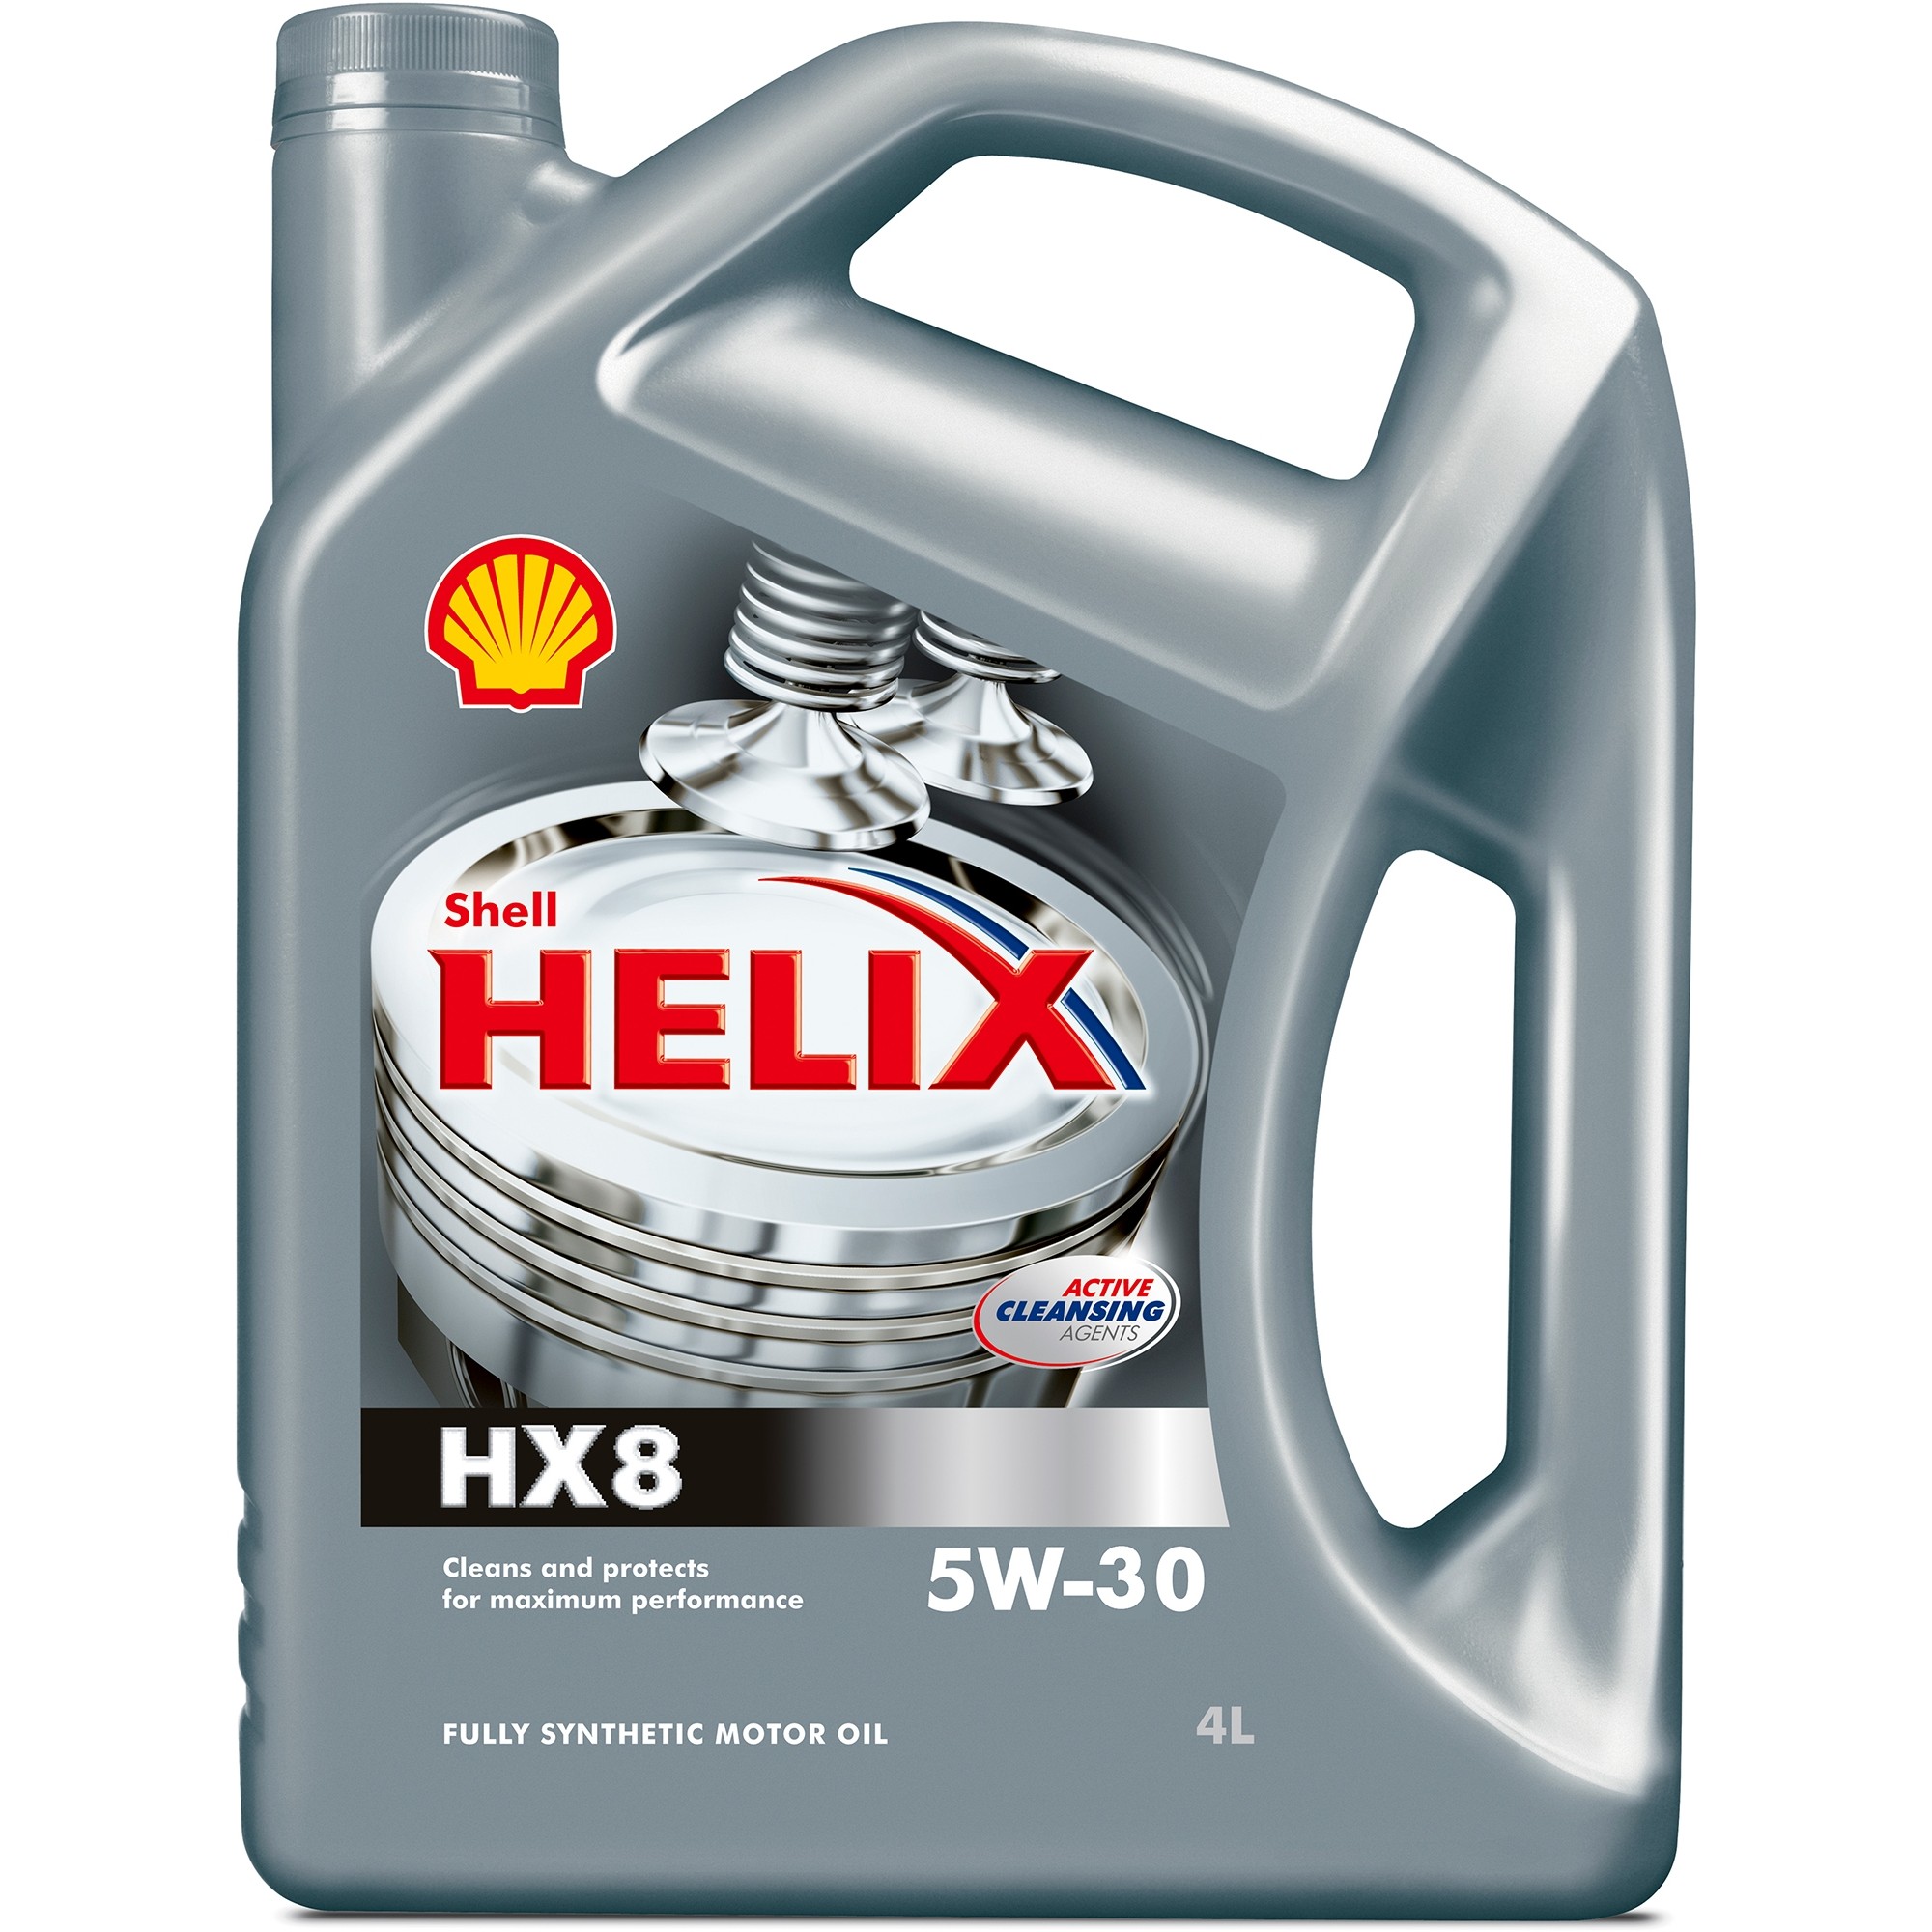 Shell Helix HX8 5W-30 4 л - зображення 1